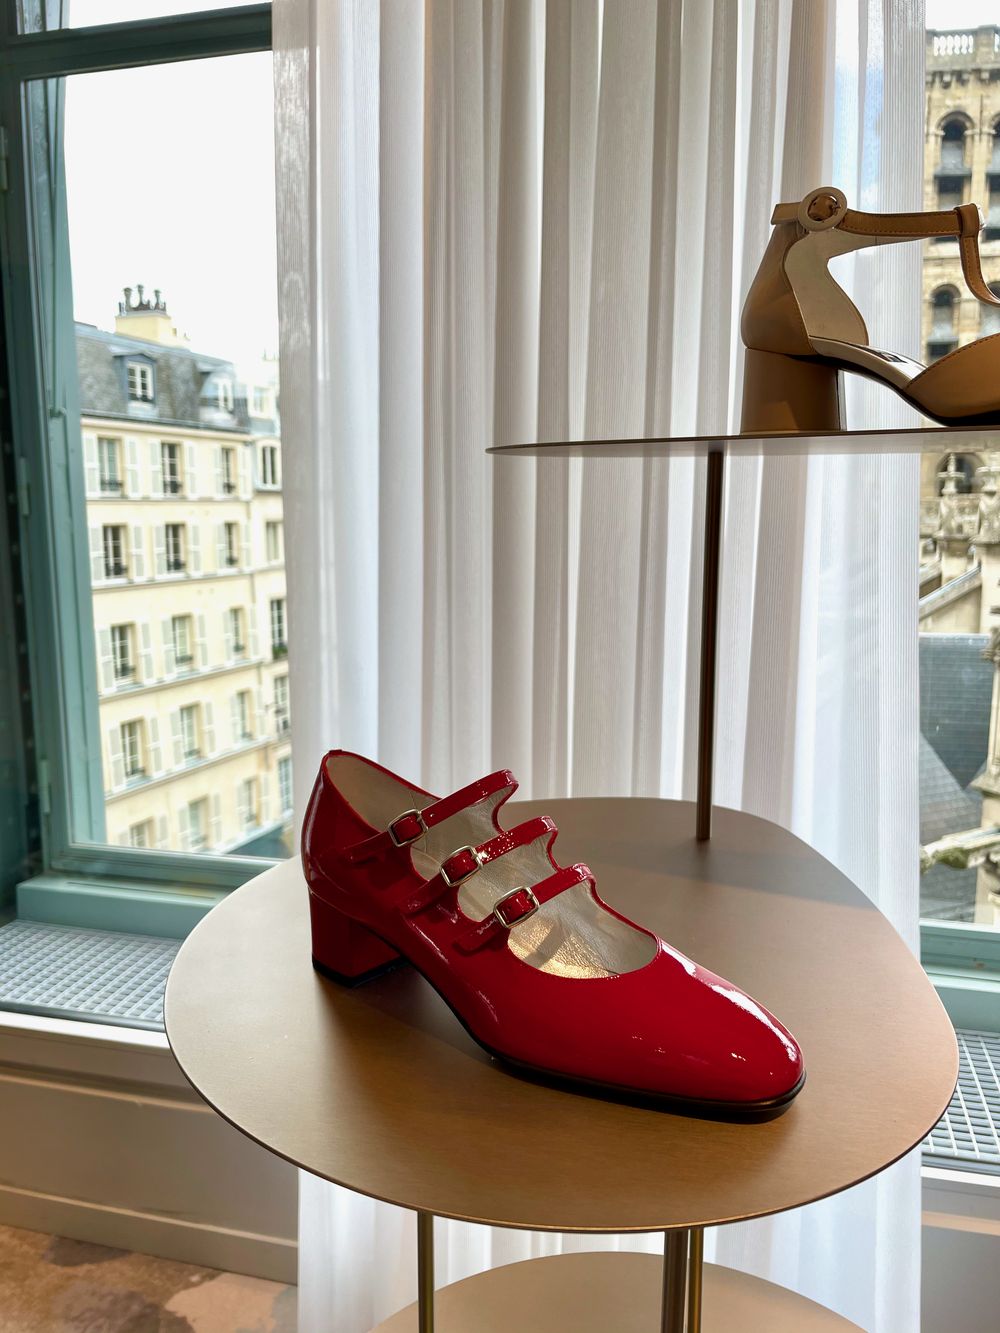 Carel shoes La Samaritaine Paris department store